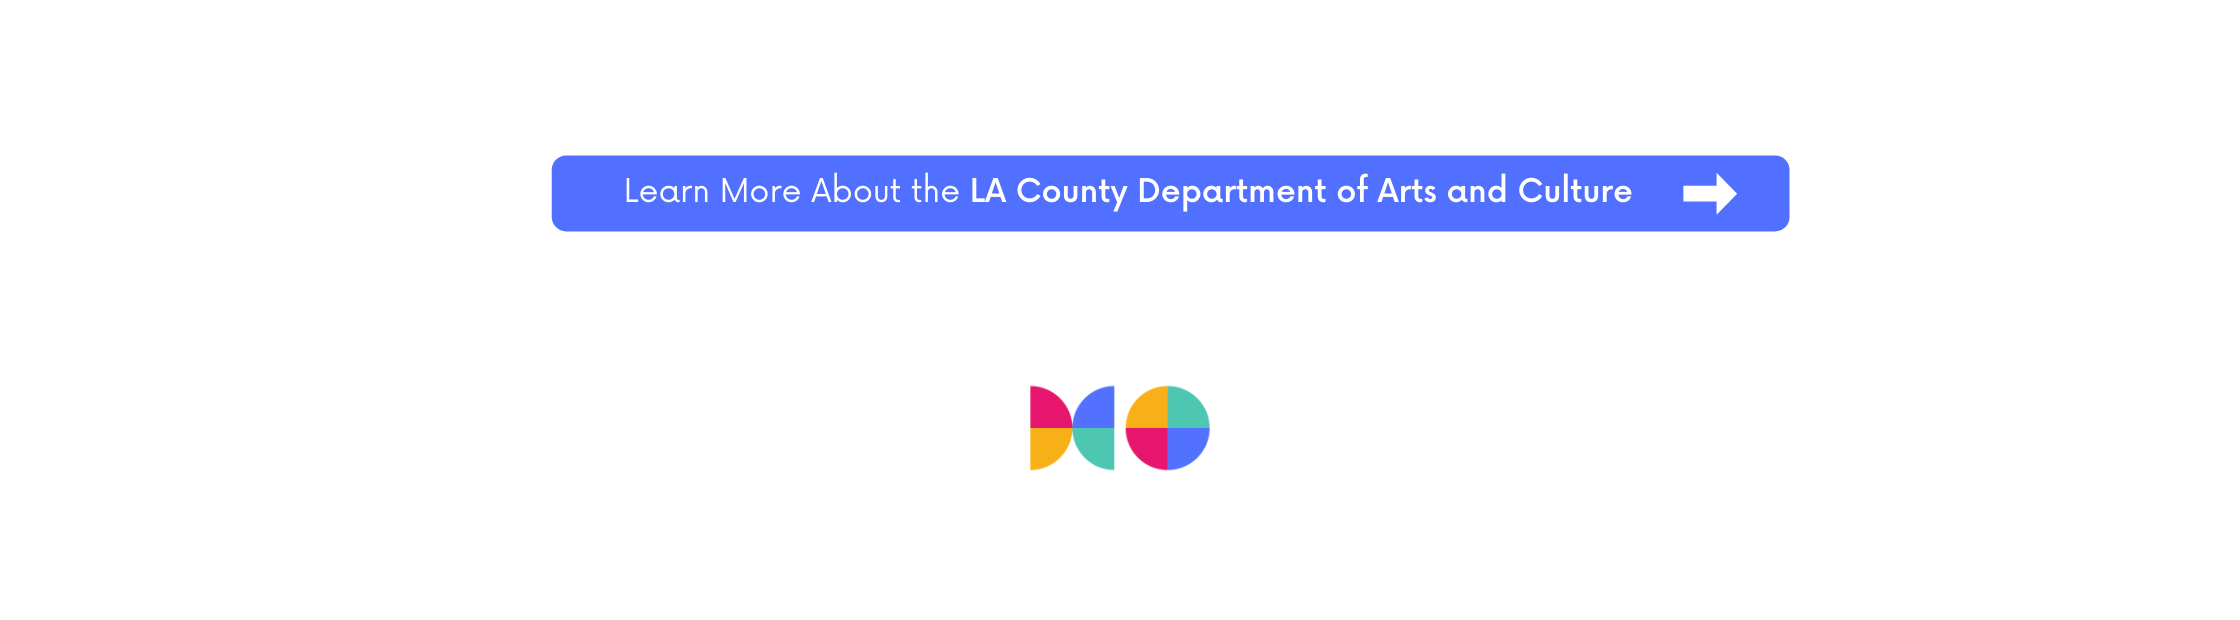 LA 카운티 예술 문화부에 대해 자세히 알아보기